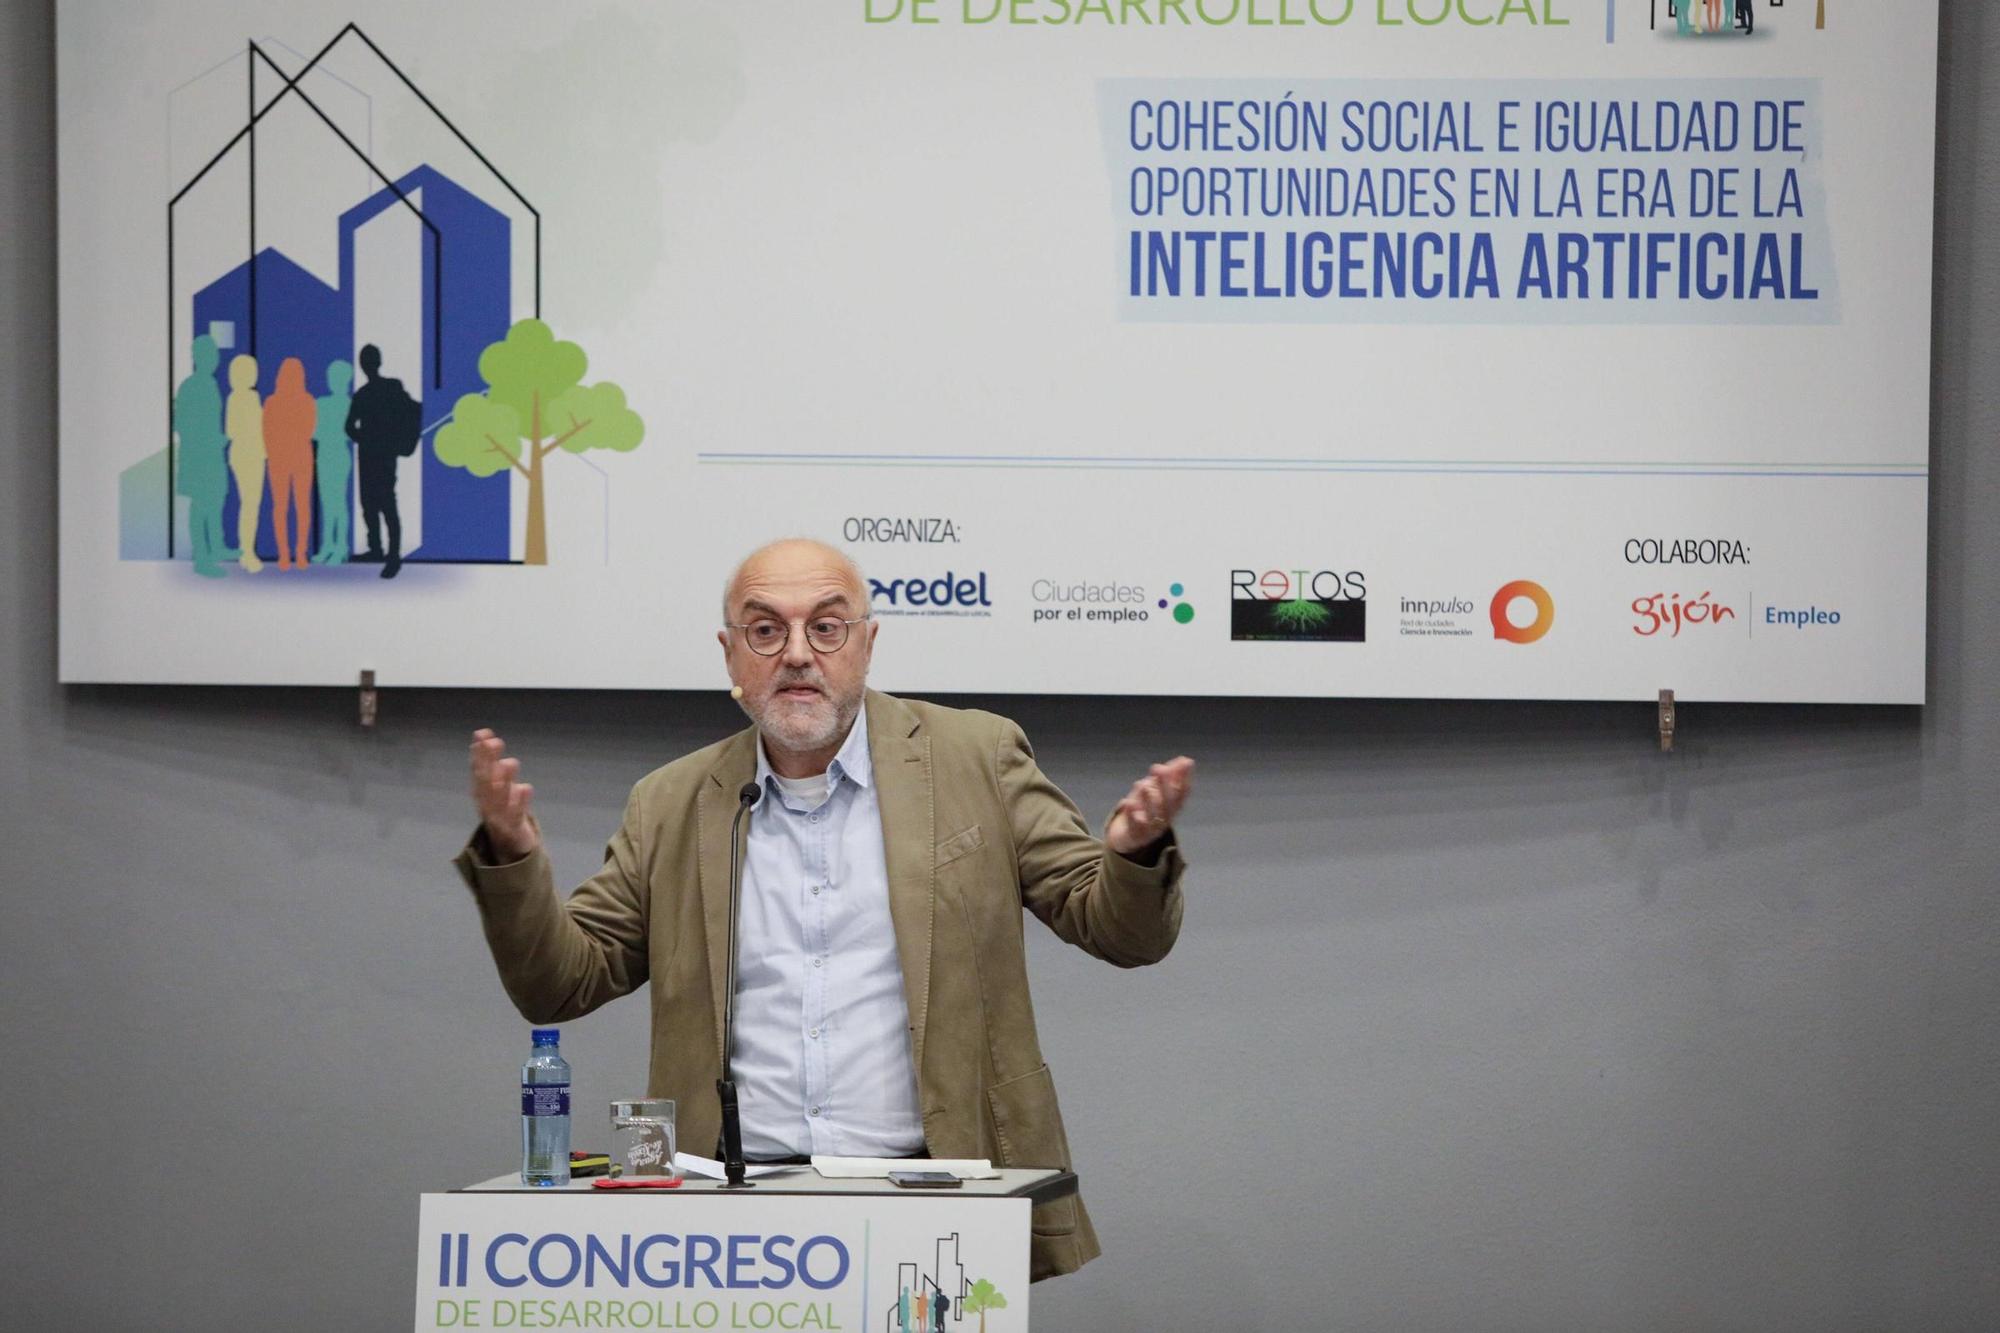 La inteligencia artificial, a debate en Gijón (en imágenes)